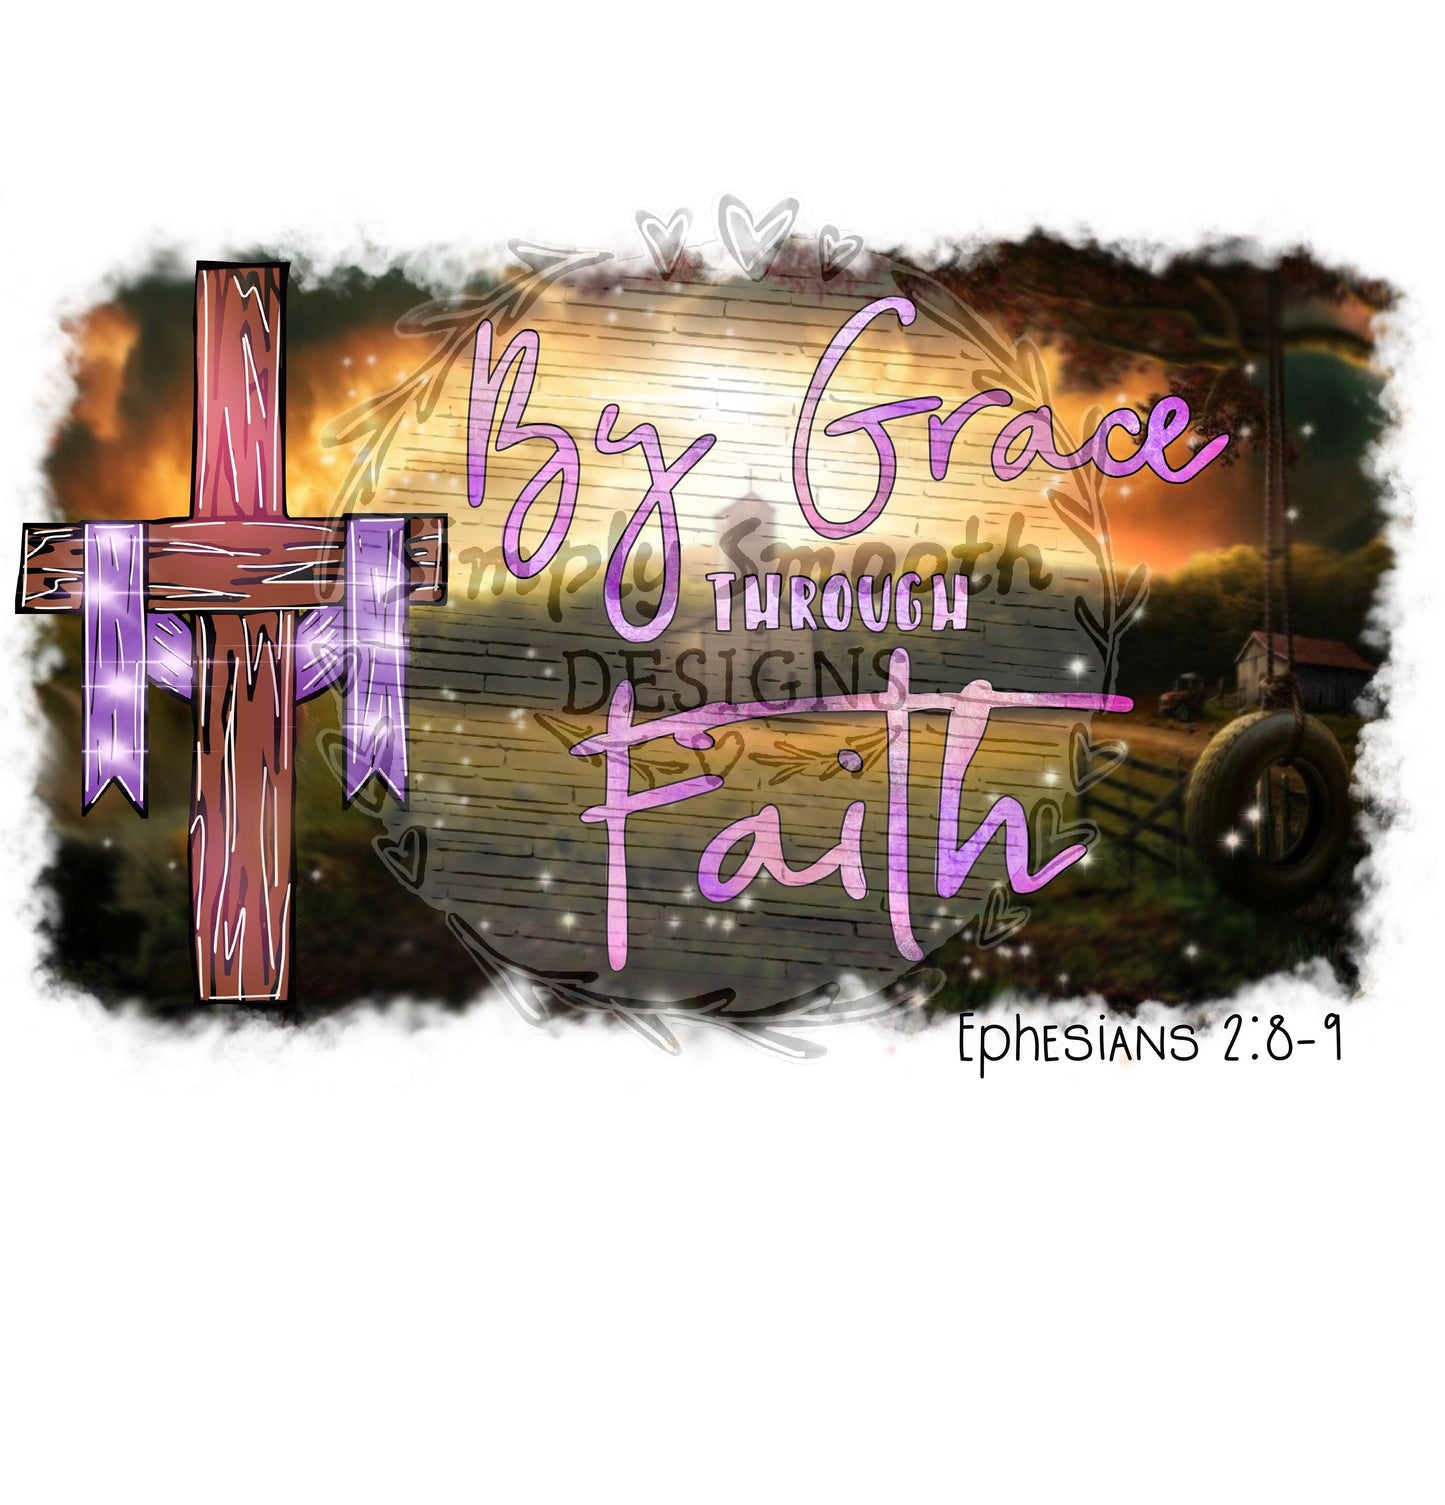 By grace through faith